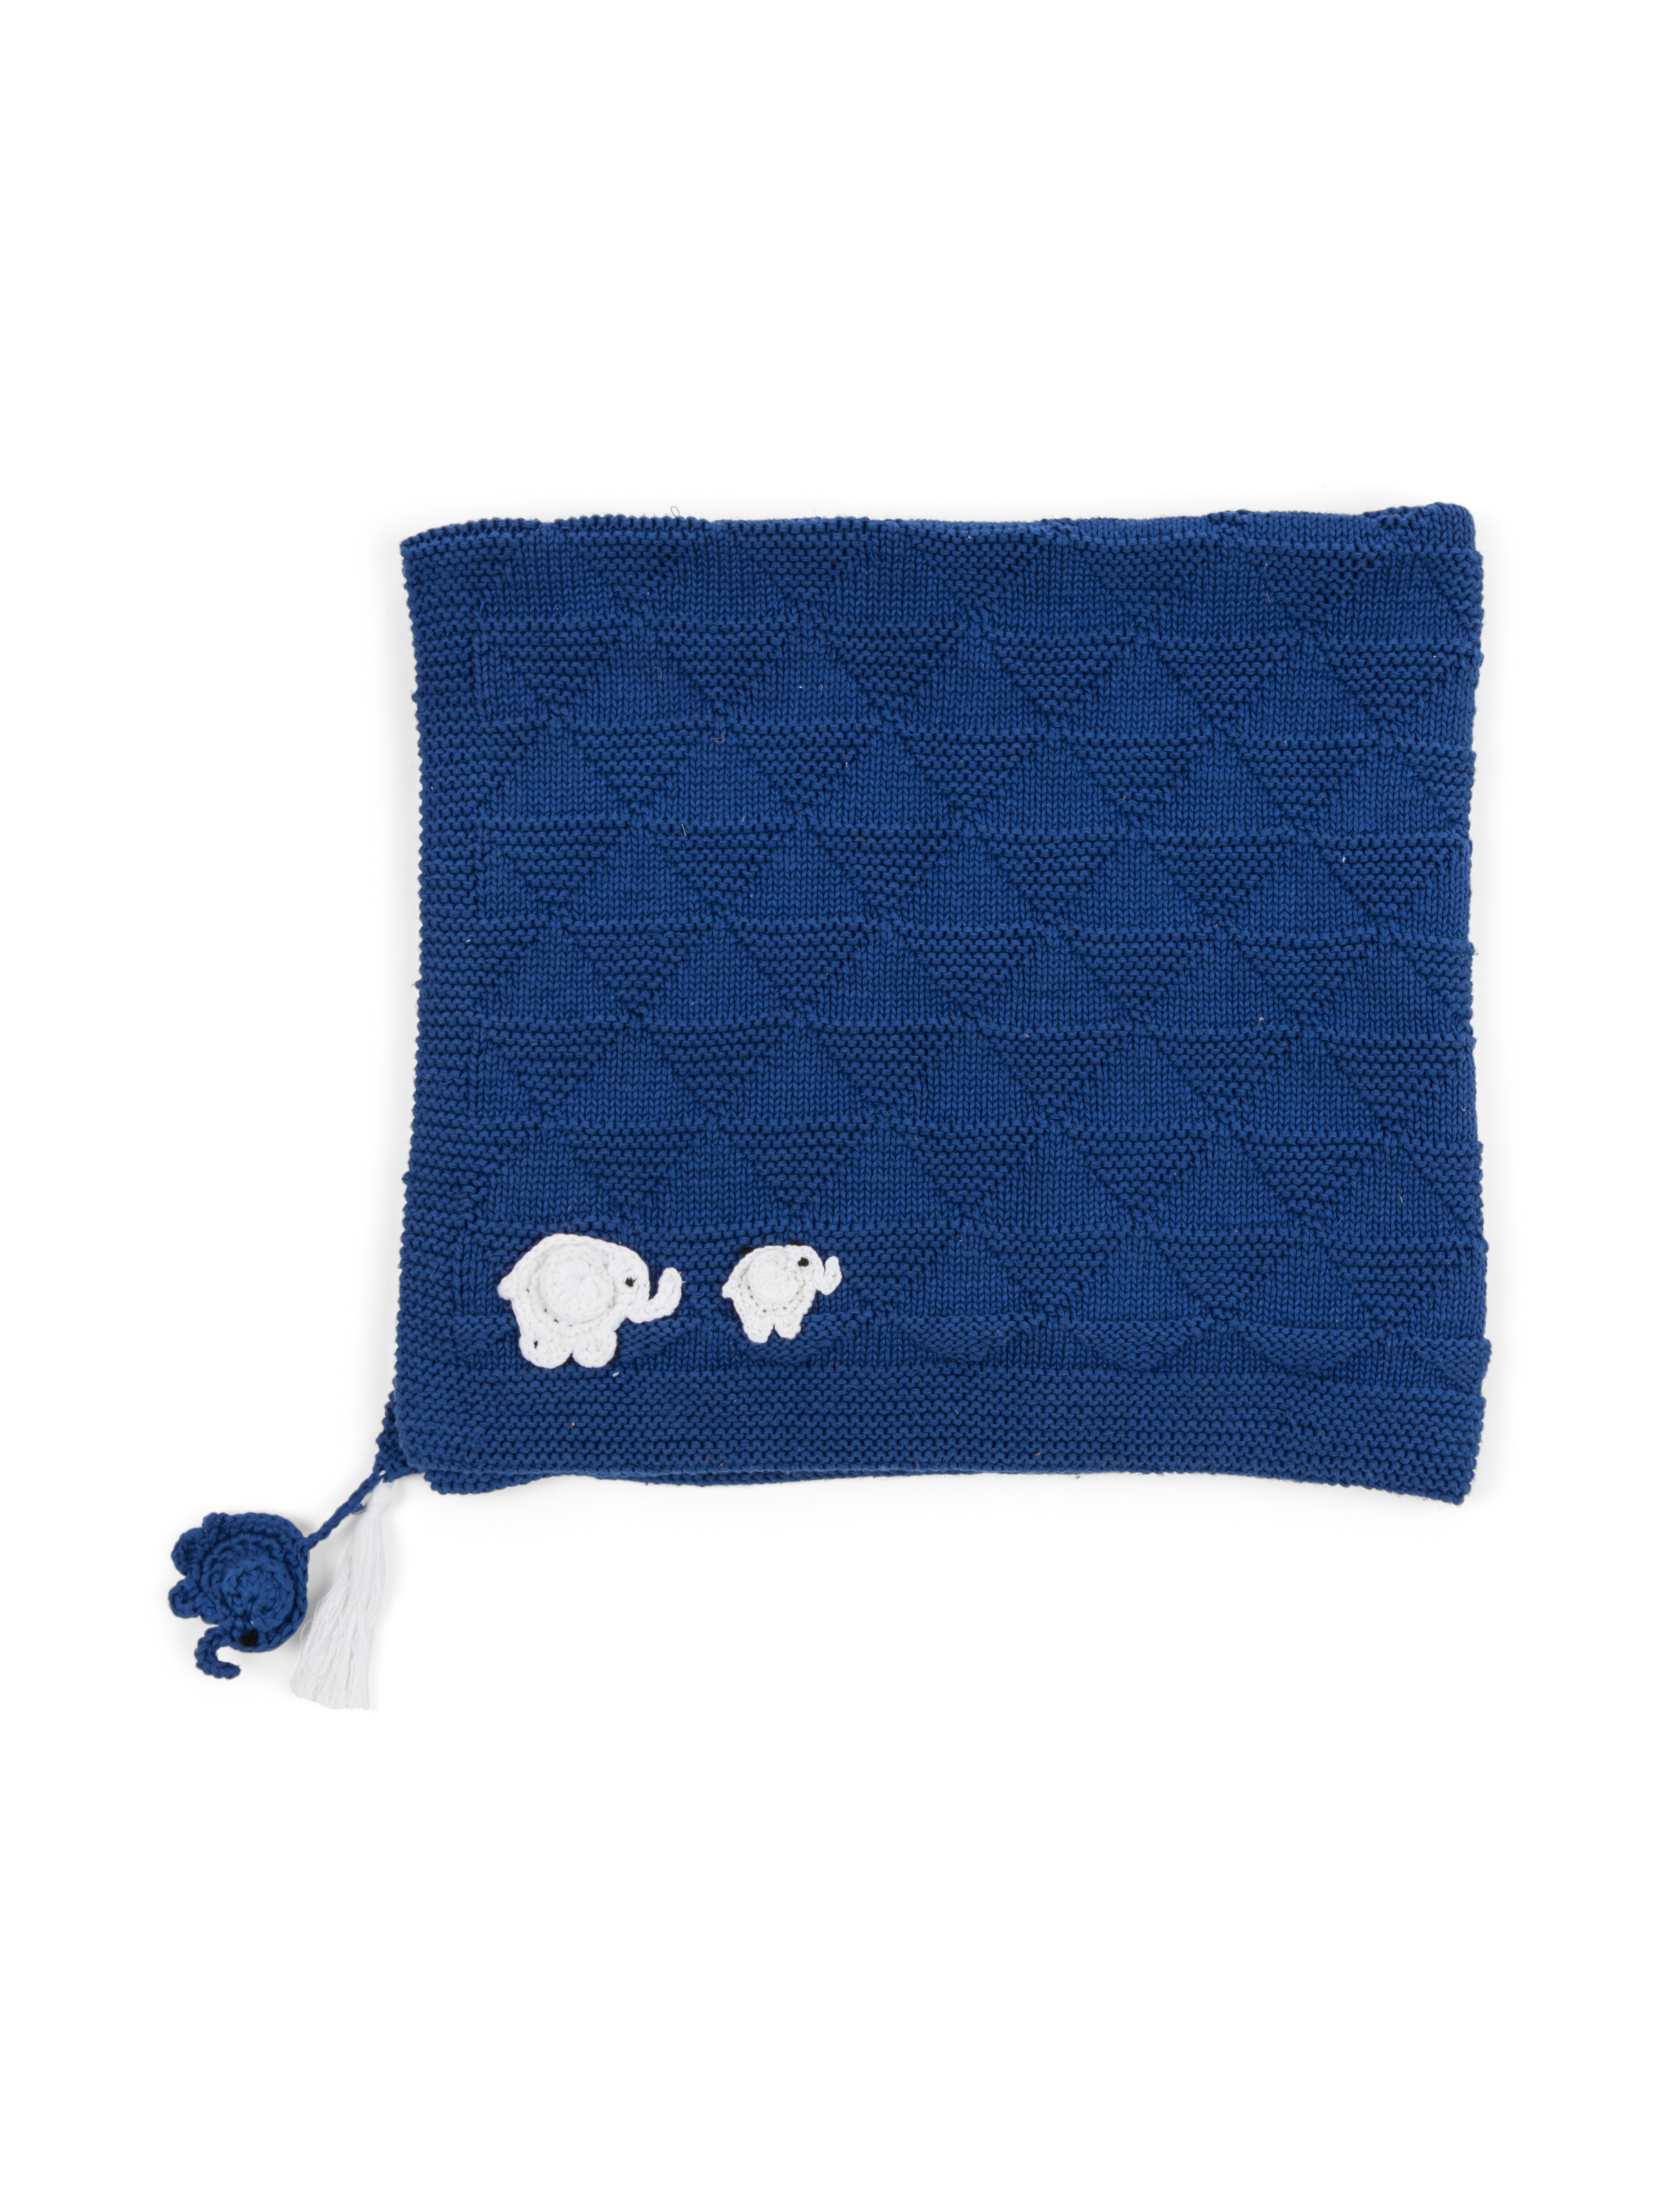 Crochet Blue Baby Blanket